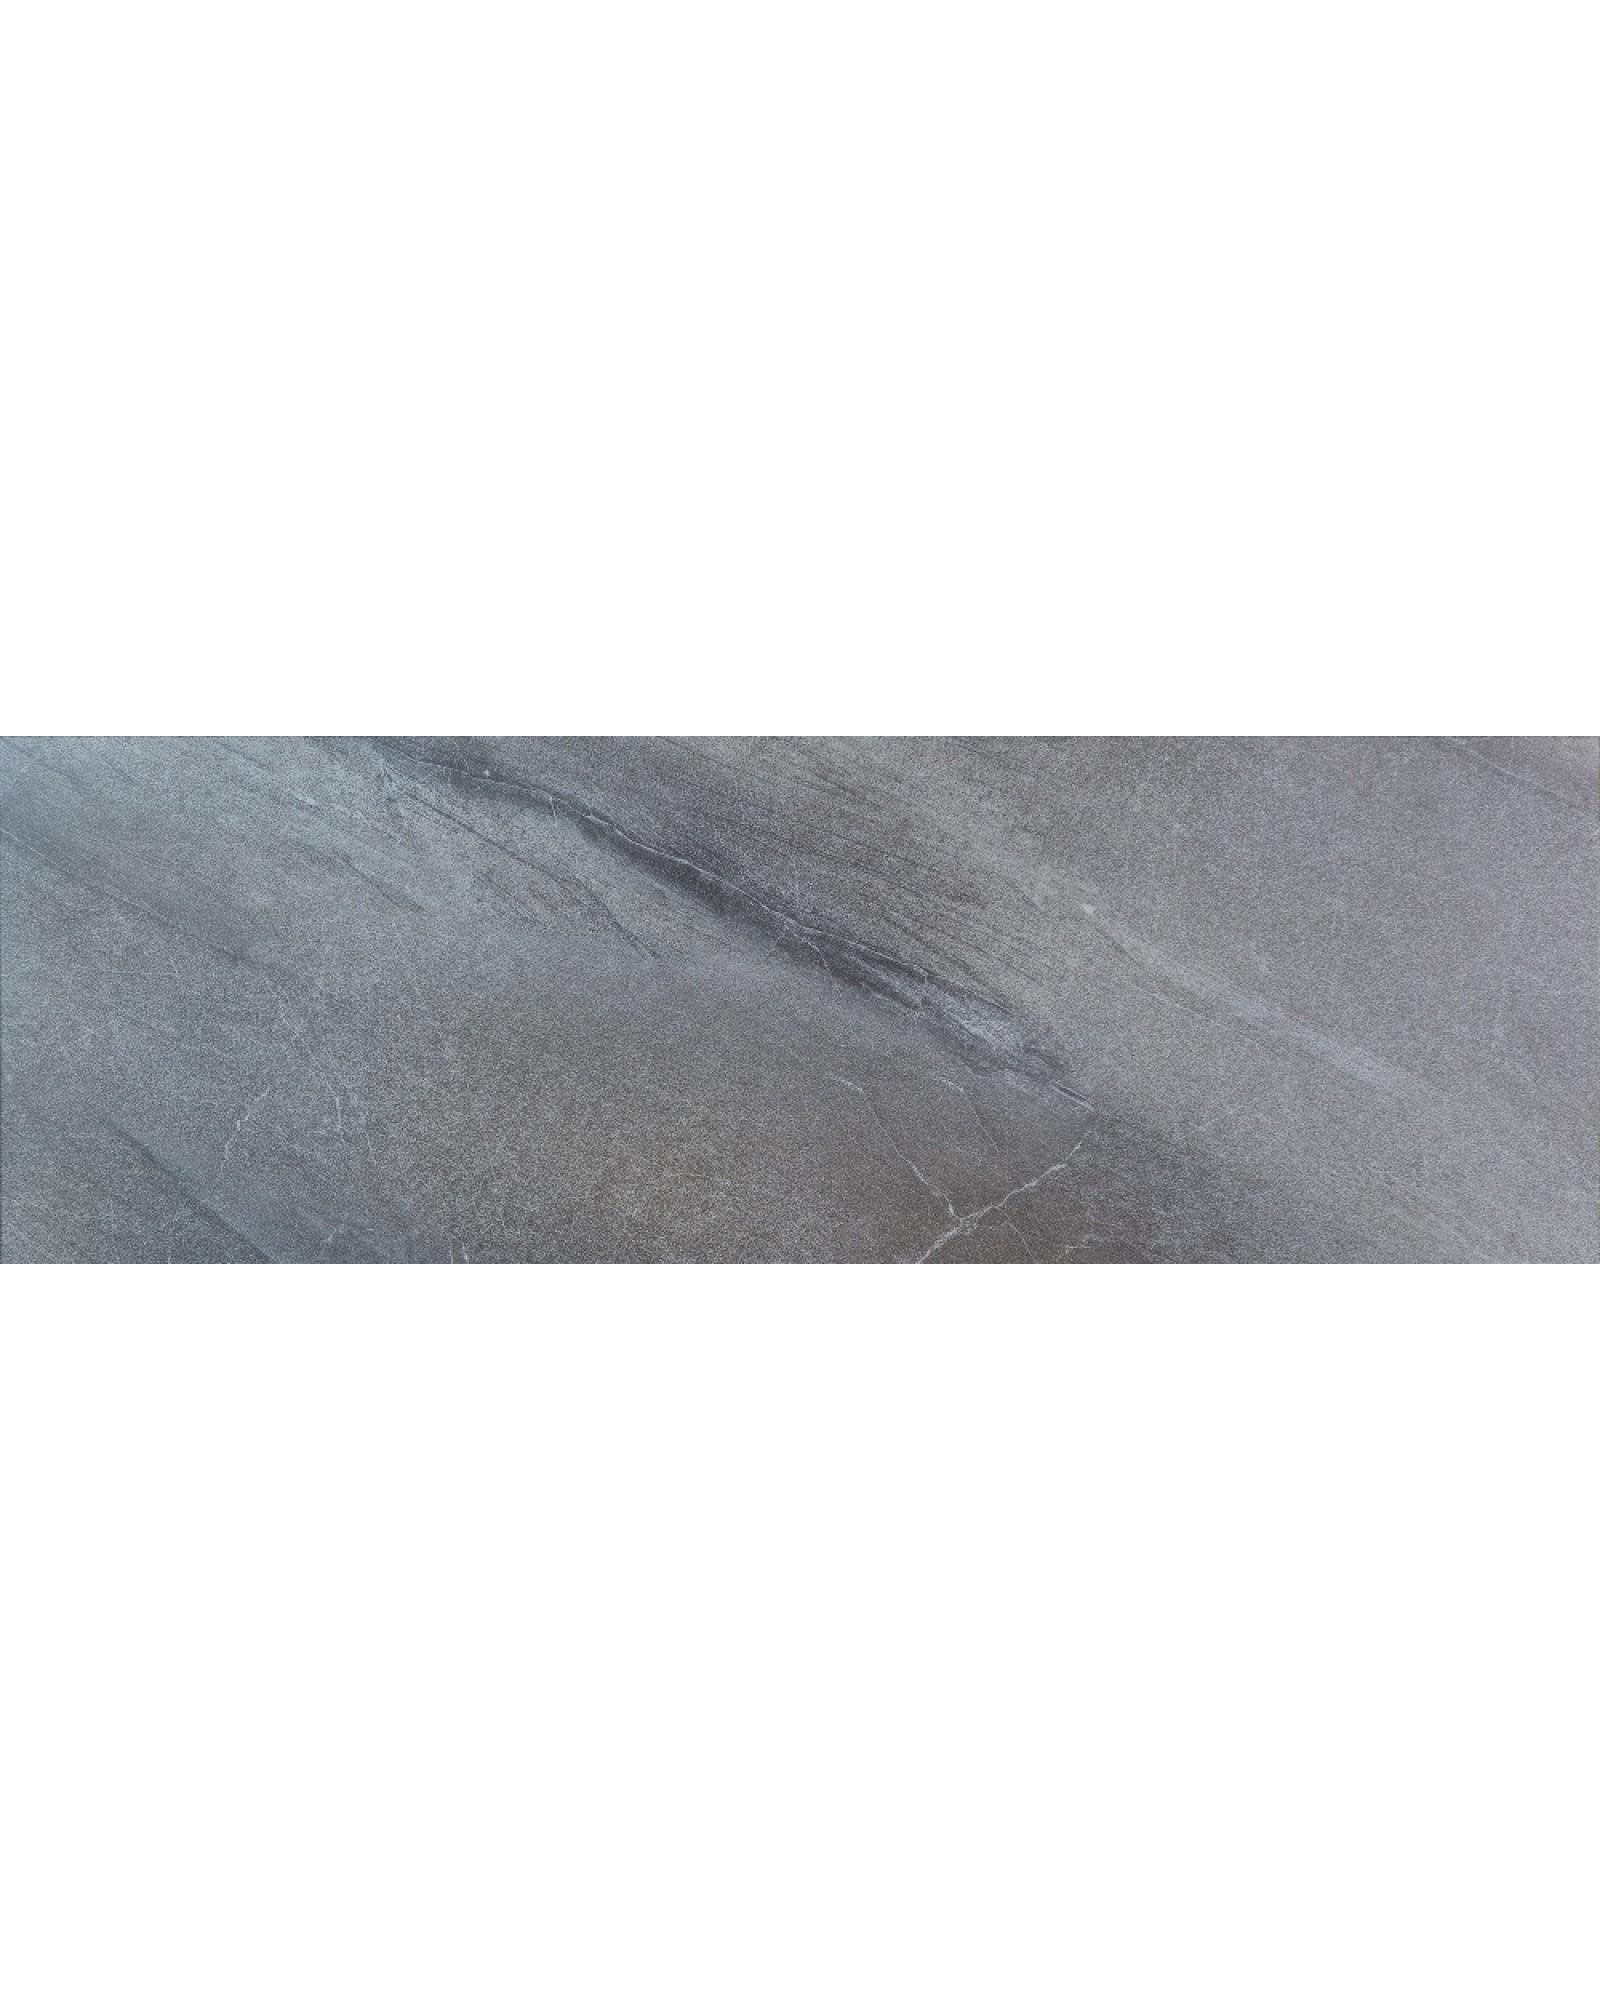 Виниловое напольное покрытие ALLFLOORS Бохум (под плитку) 3 мм (V3-018-21)